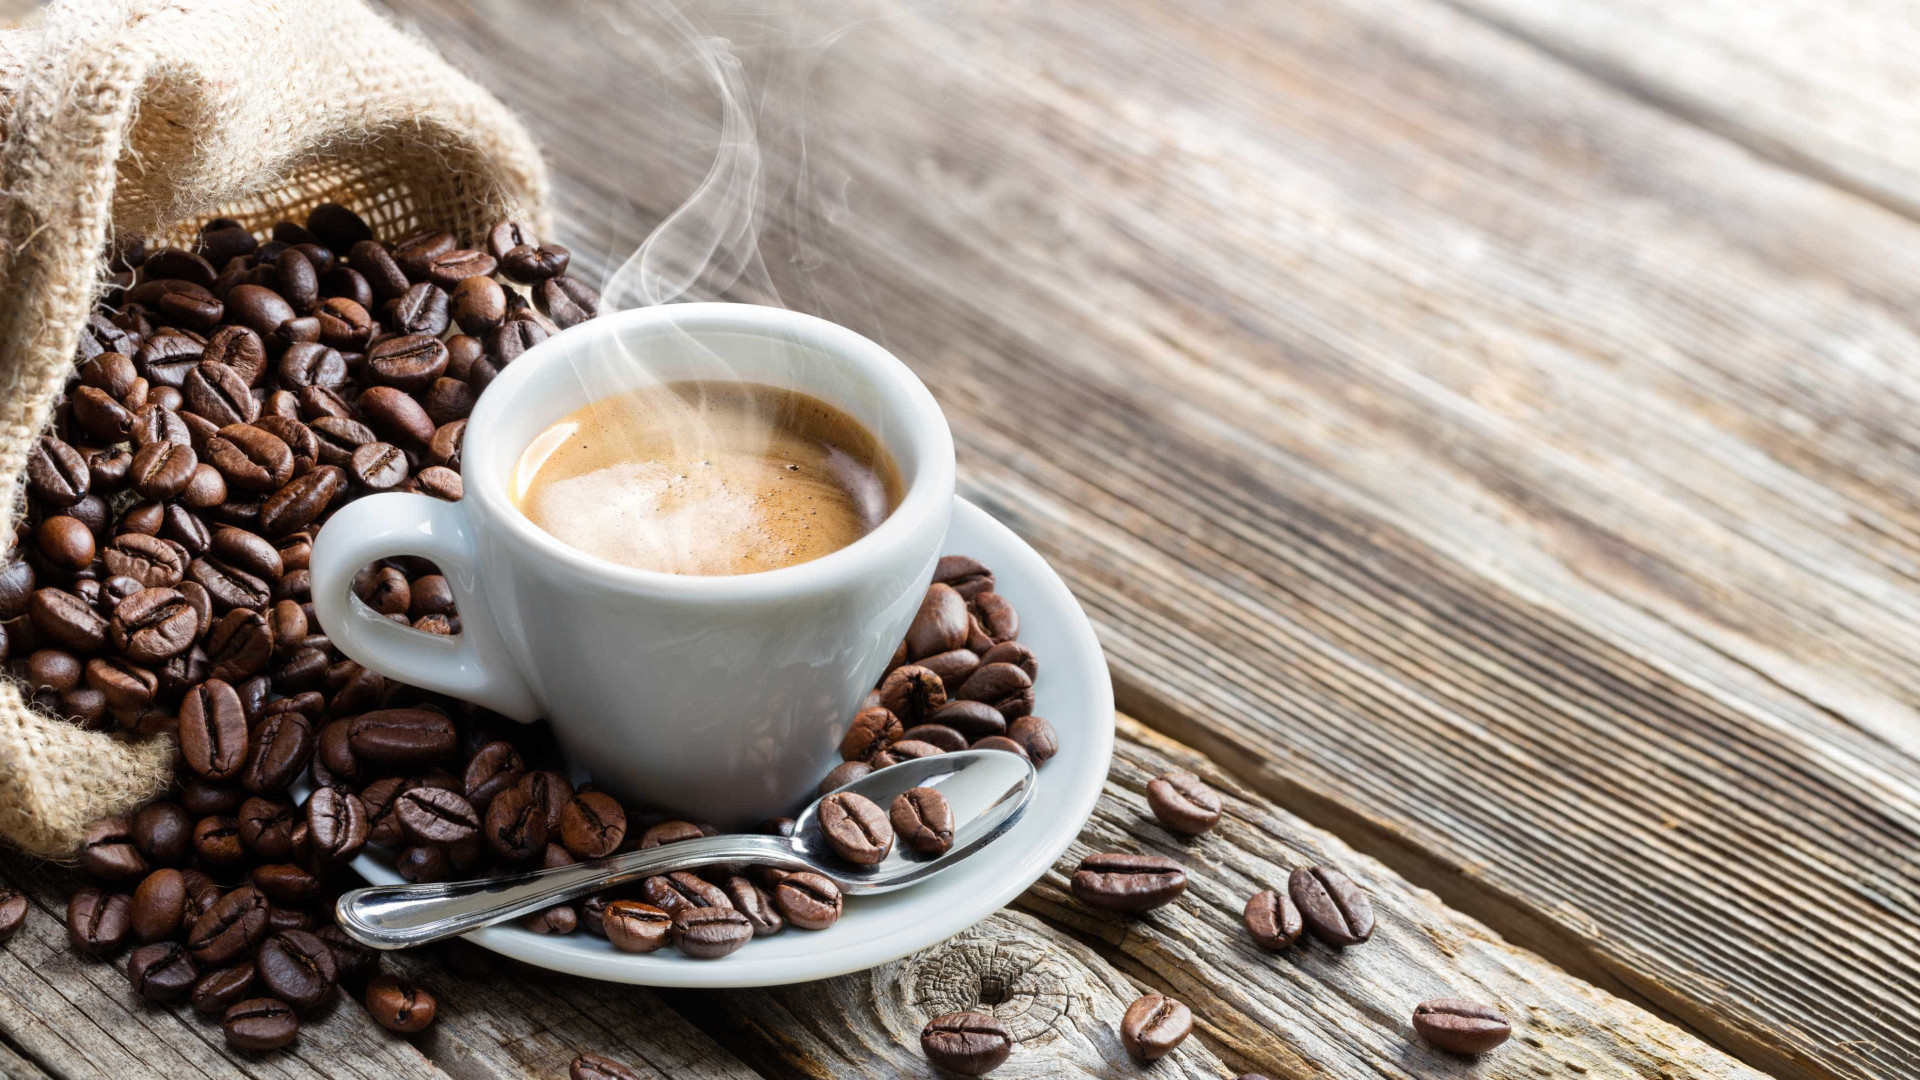 Estimativa da Conab indica redução de 20,5% na safra de café 